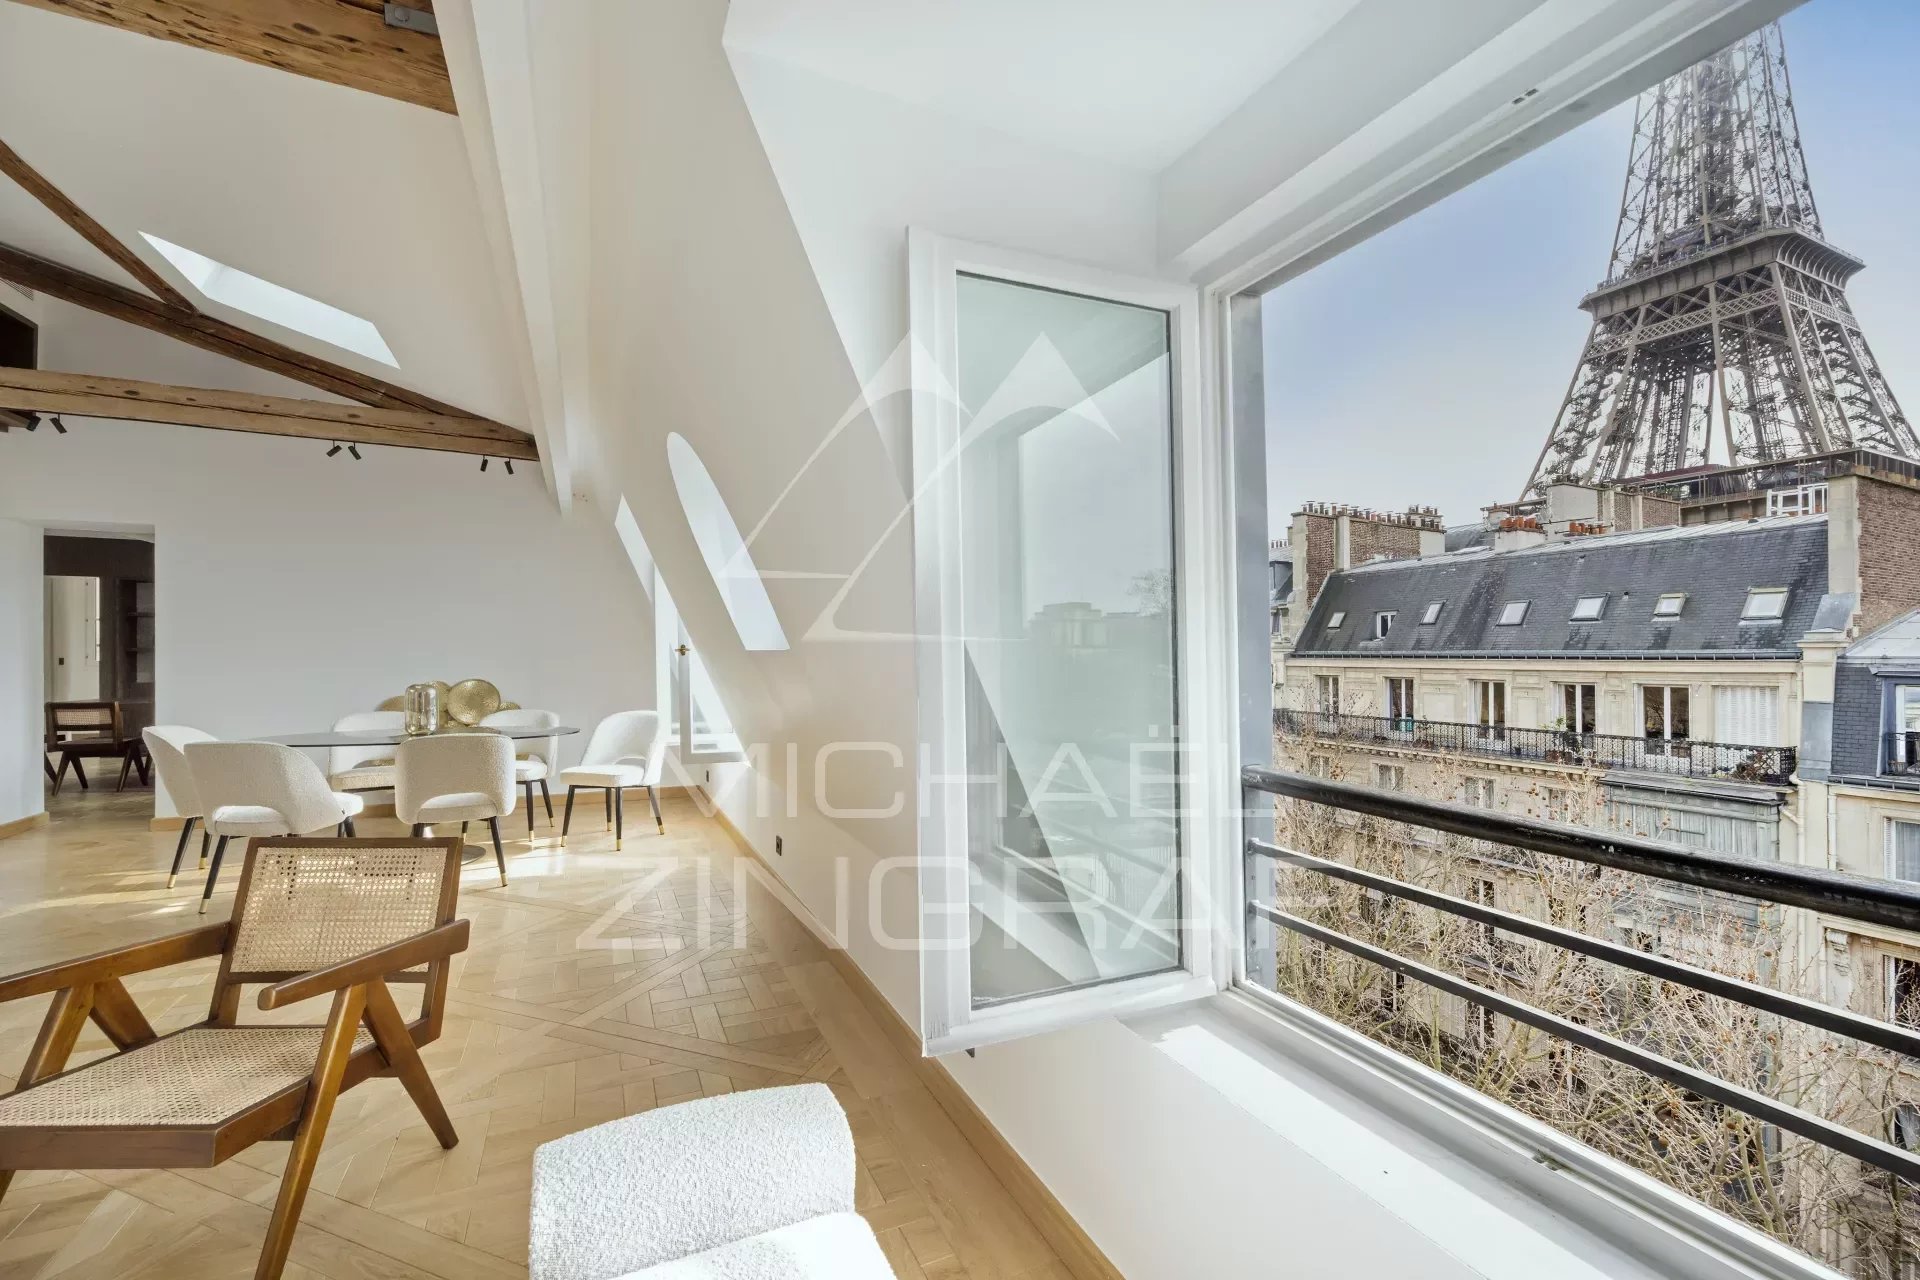 Zu verkaufen - Wohnung 3 Suiten - Oberste Etage - Blick Eiffelturm